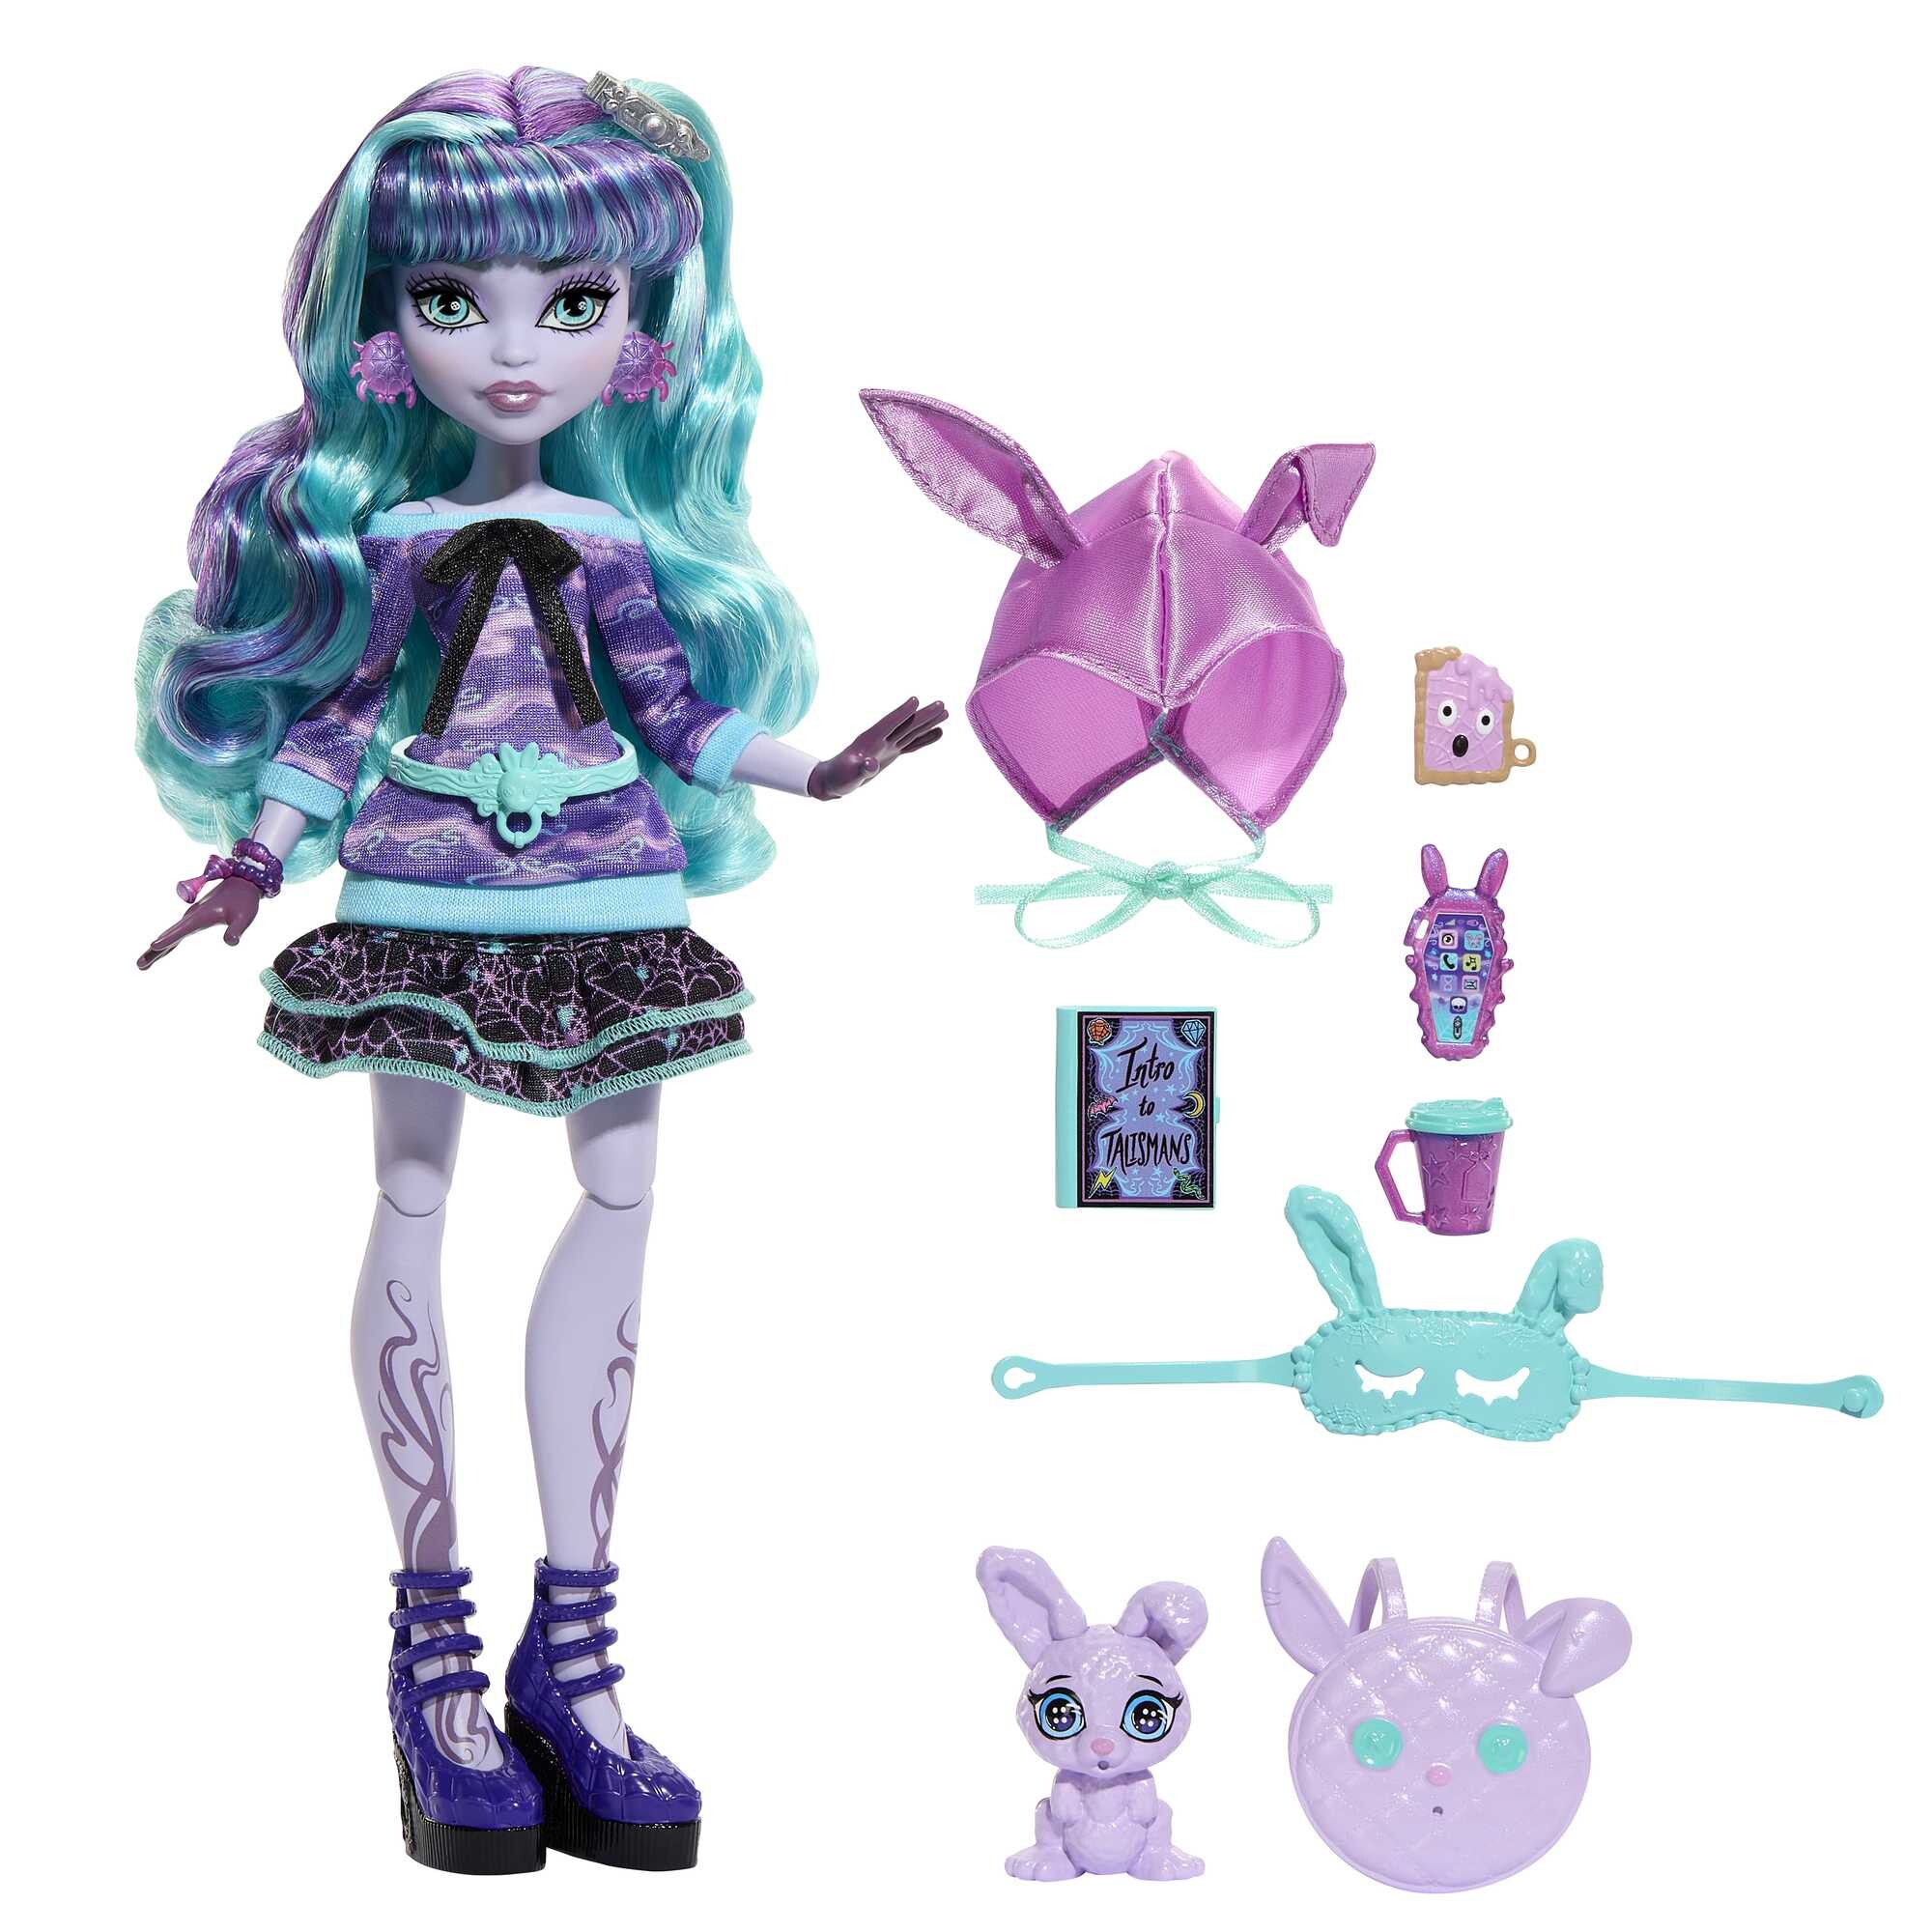 Monster high - twyla creepover party, bambola con outifit dettagliato e accessori per il pigiama party, cucciolo coniglietto dustin incluso - 